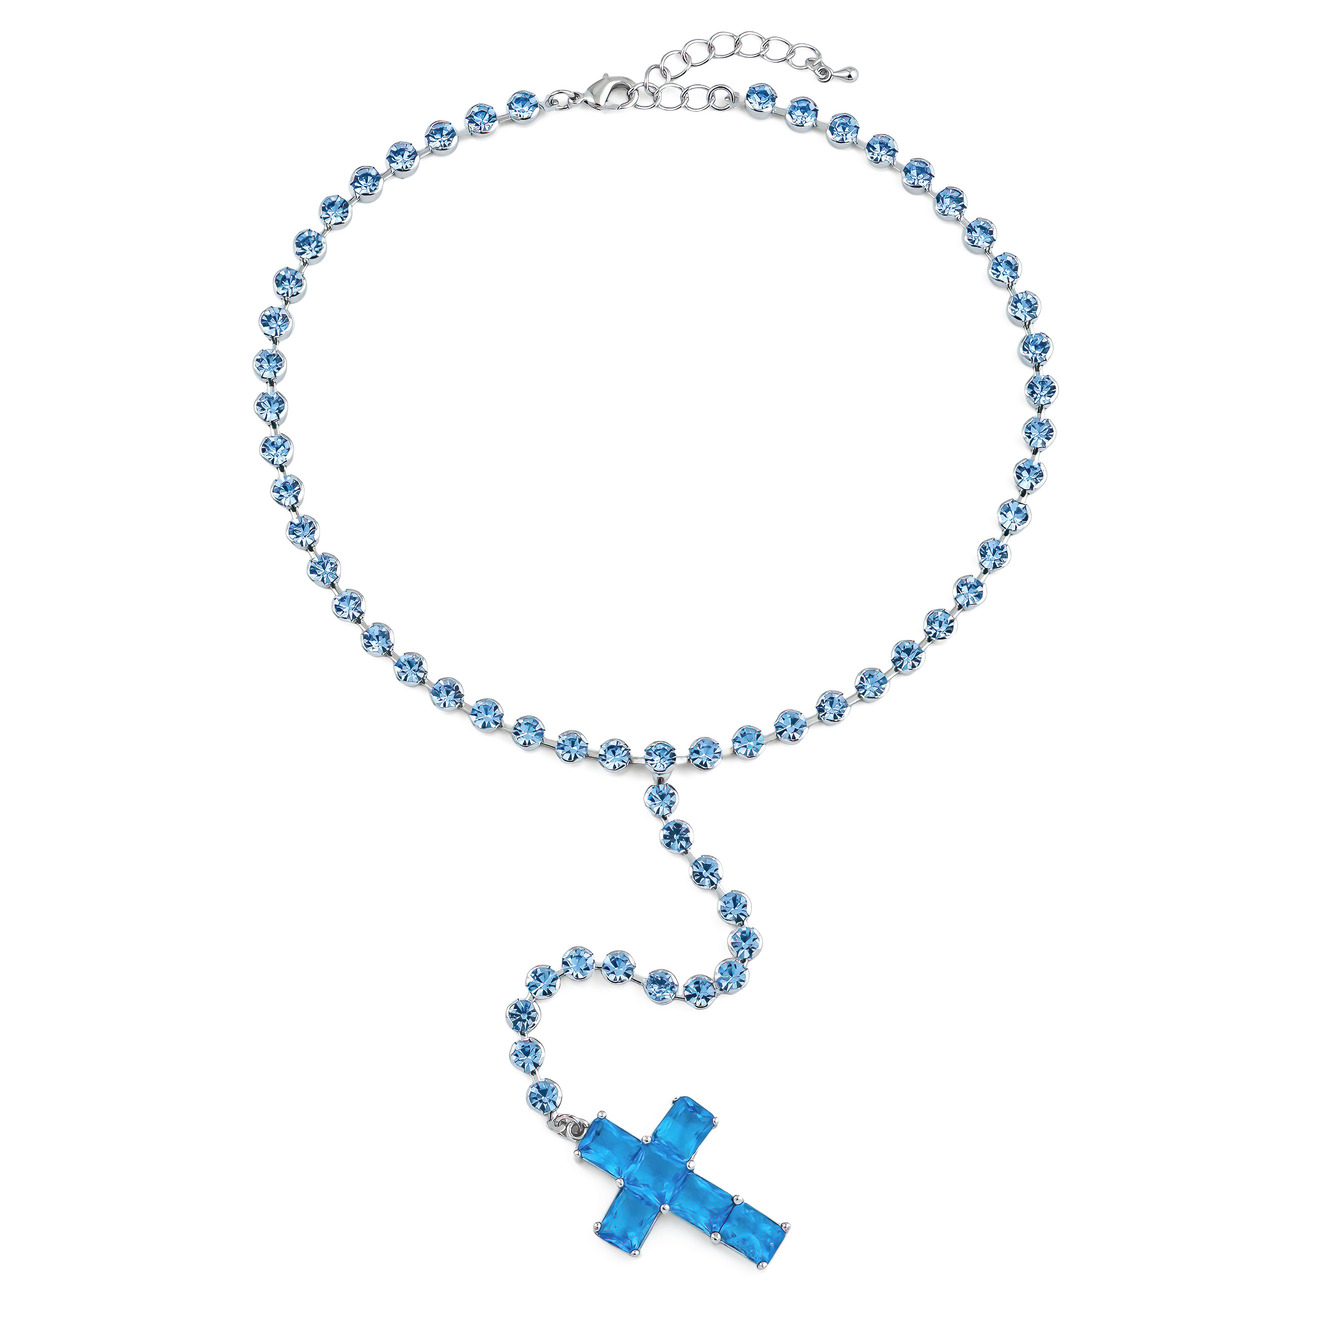 Herald Percy Серебристое колье-галстук с голубыми кристаллами в виде креста herald percy серебристое кольцо с двумя разными кристаллами